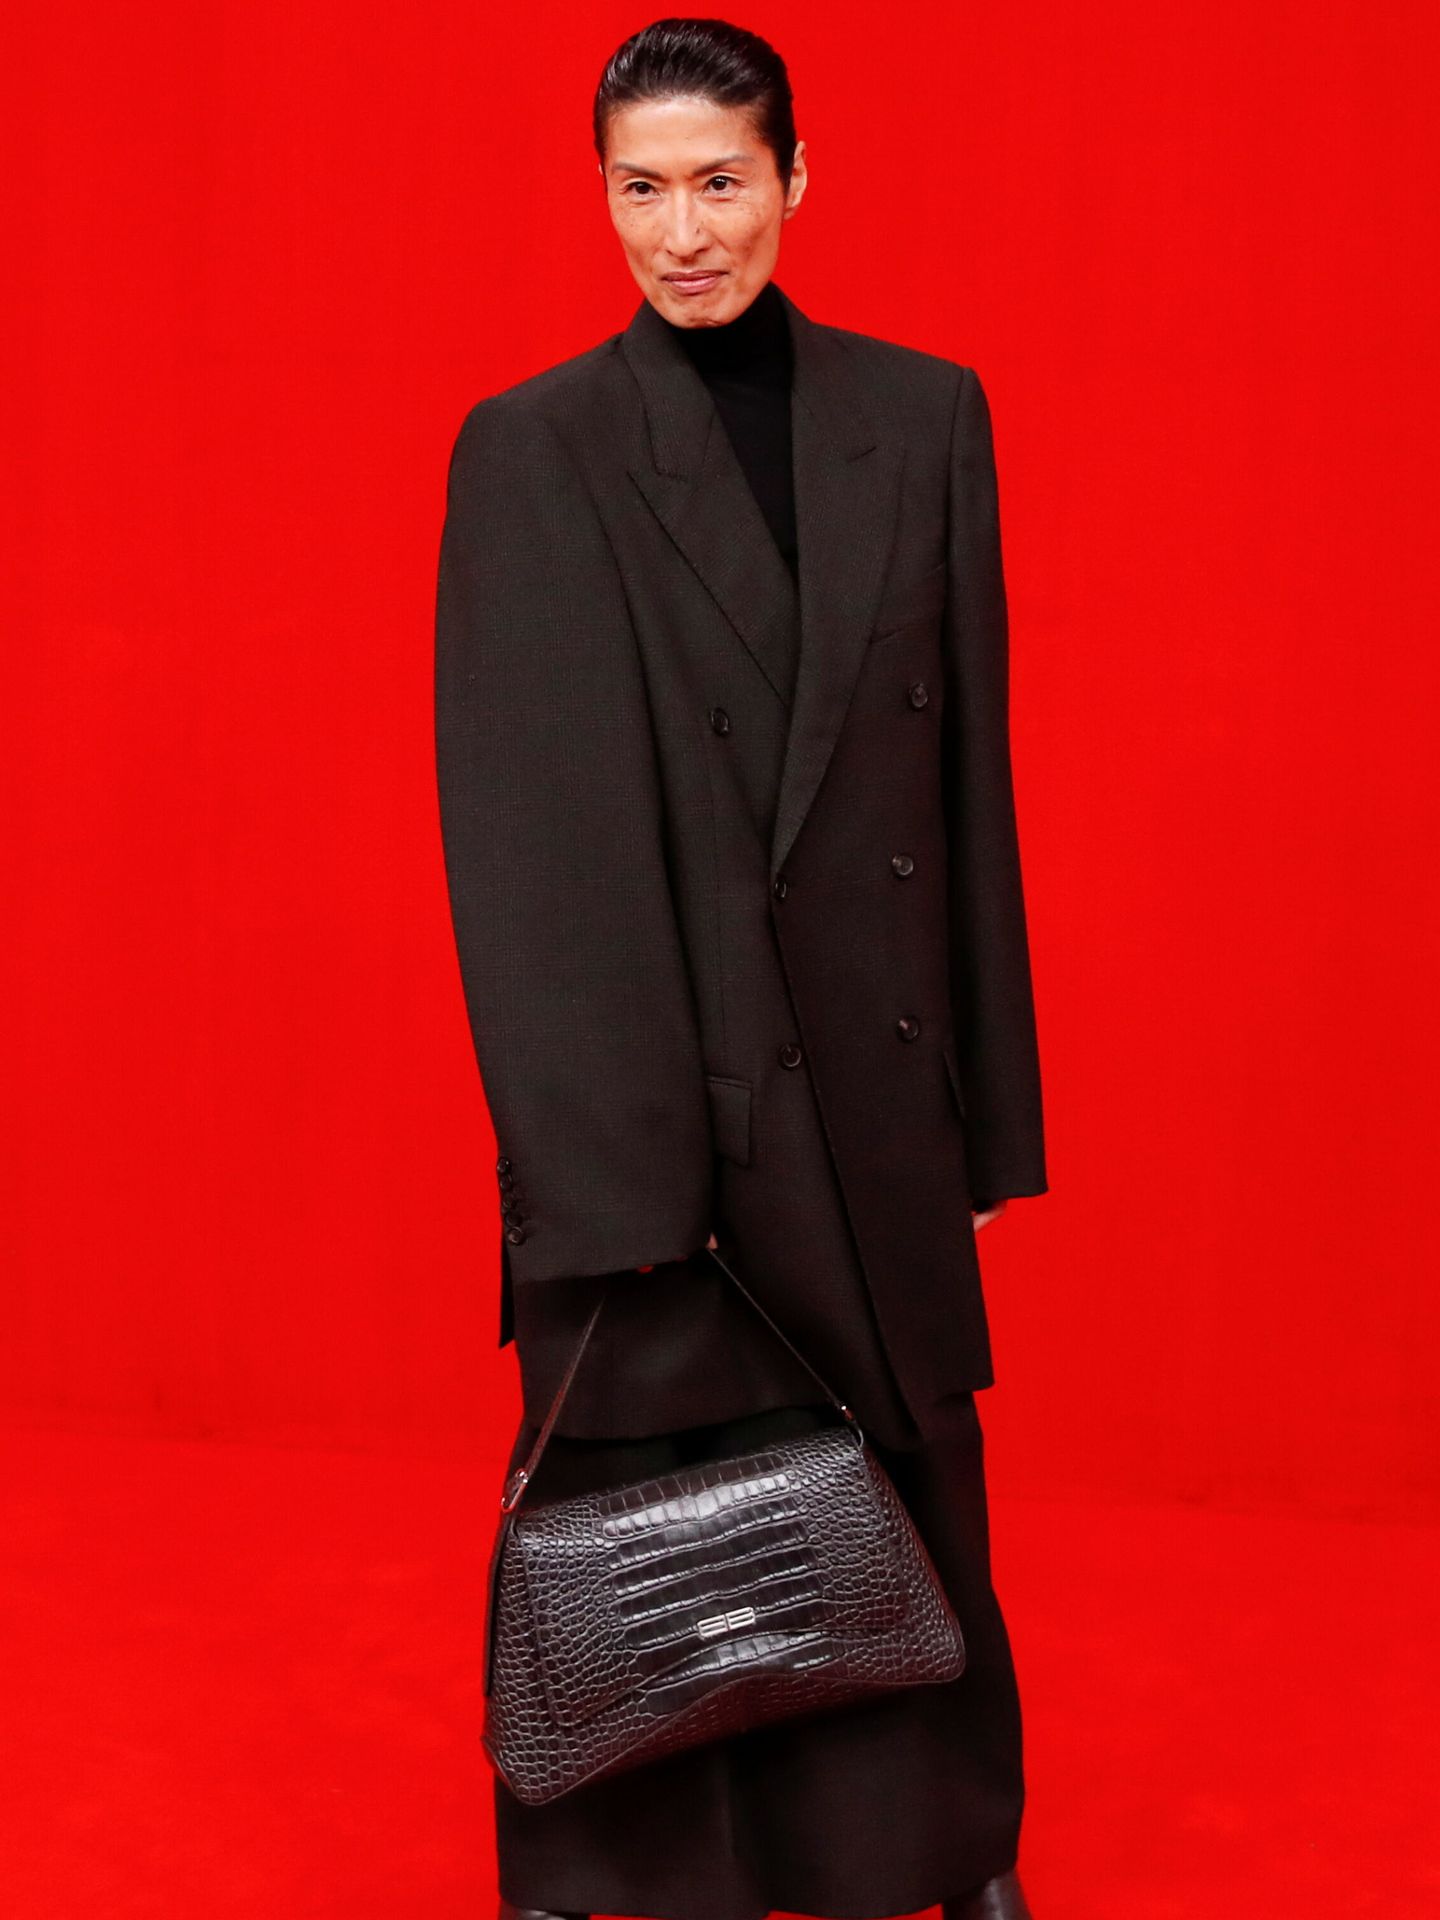 Modelo de la colección Red Carpet Premiere de Balenciaga. (Reuters)